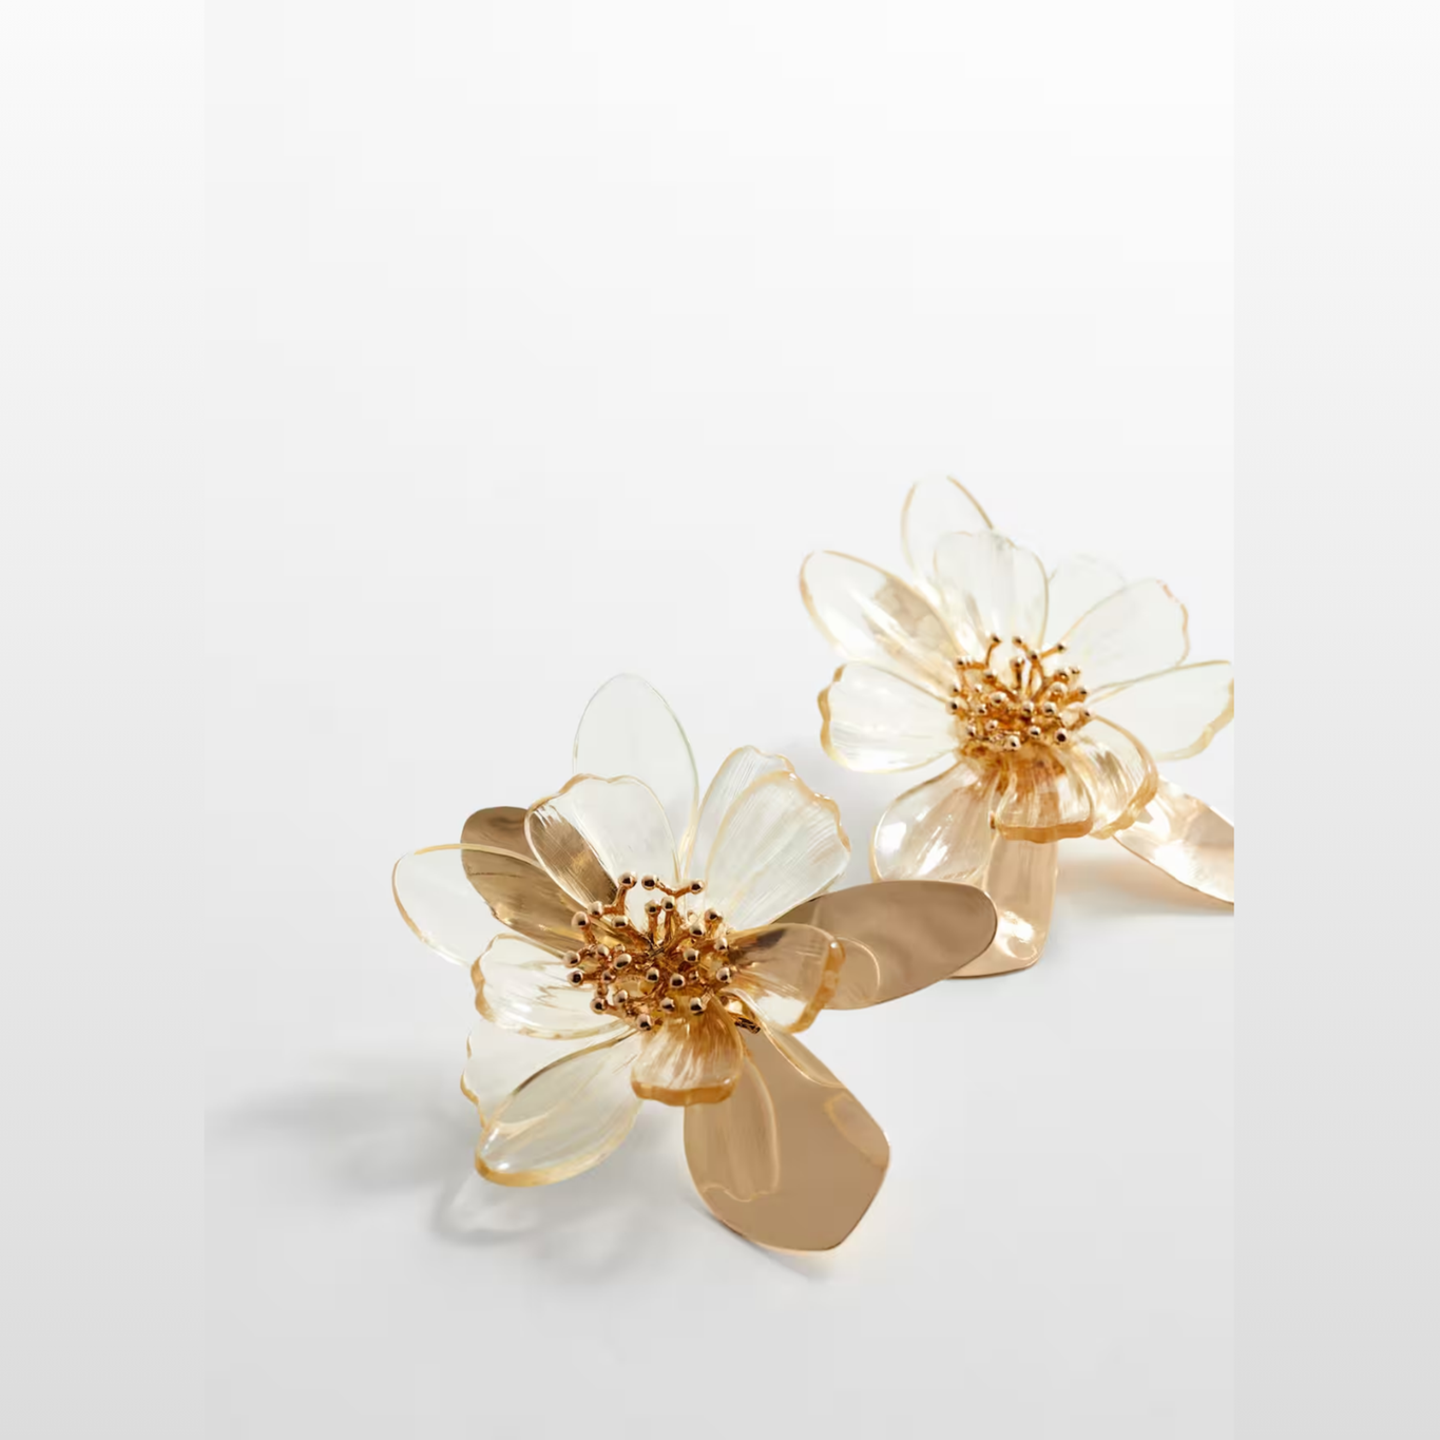 Maxi-Blumen-Ohrringe sehen hervorragend zu jedem Sommerkleid oder Teil aus Leinen aus. Von Mango, um 23 Euro. 